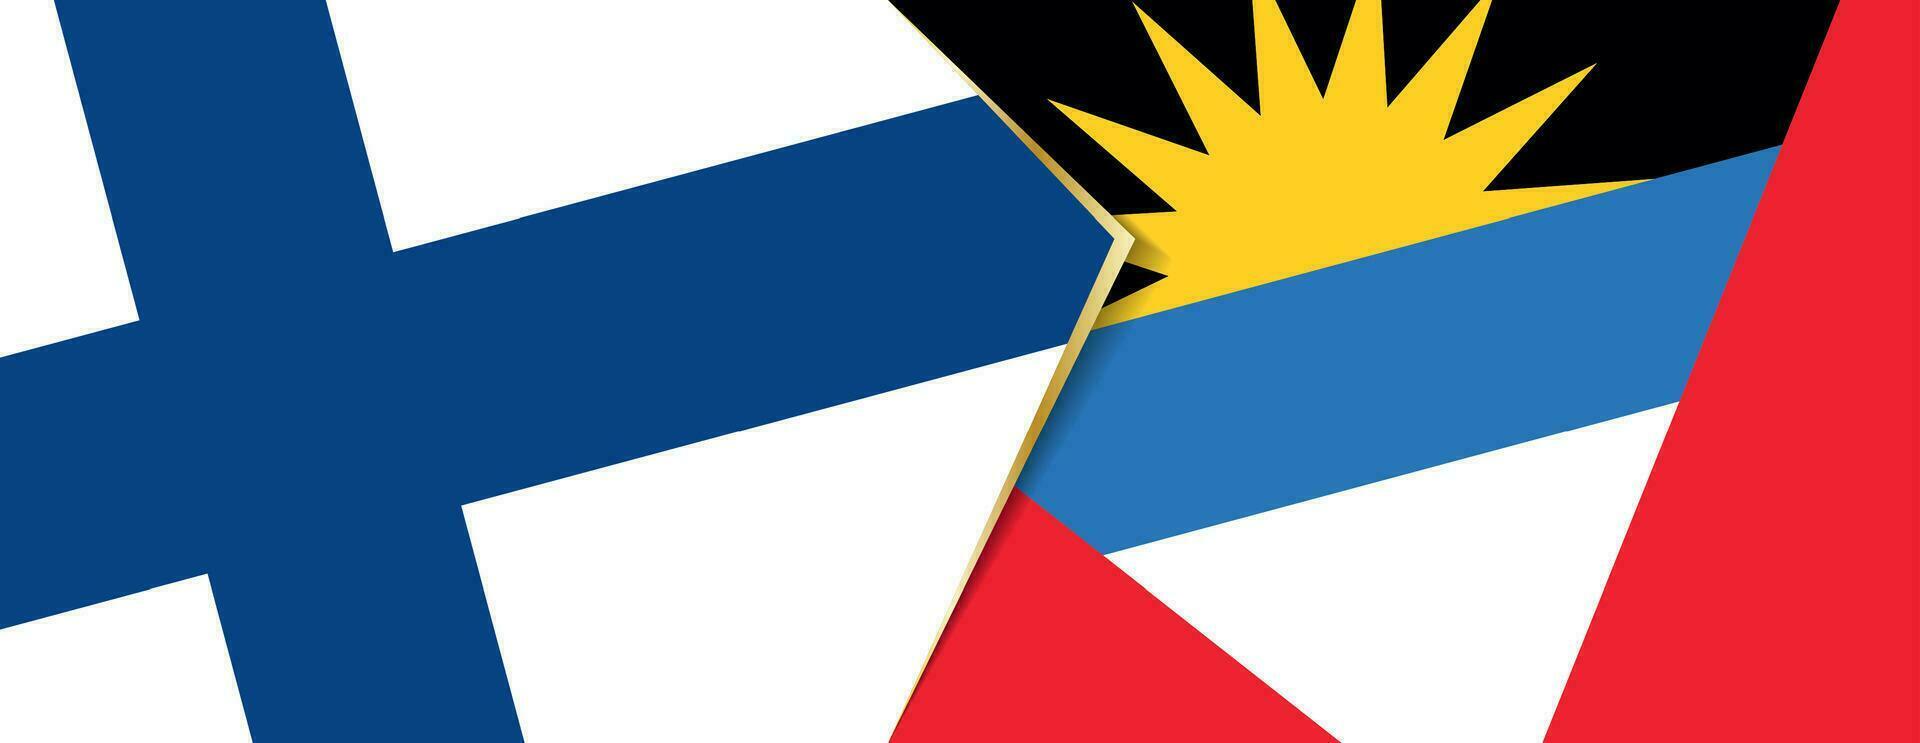 finland och antigua och barbuda flaggor, två vektor flaggor.